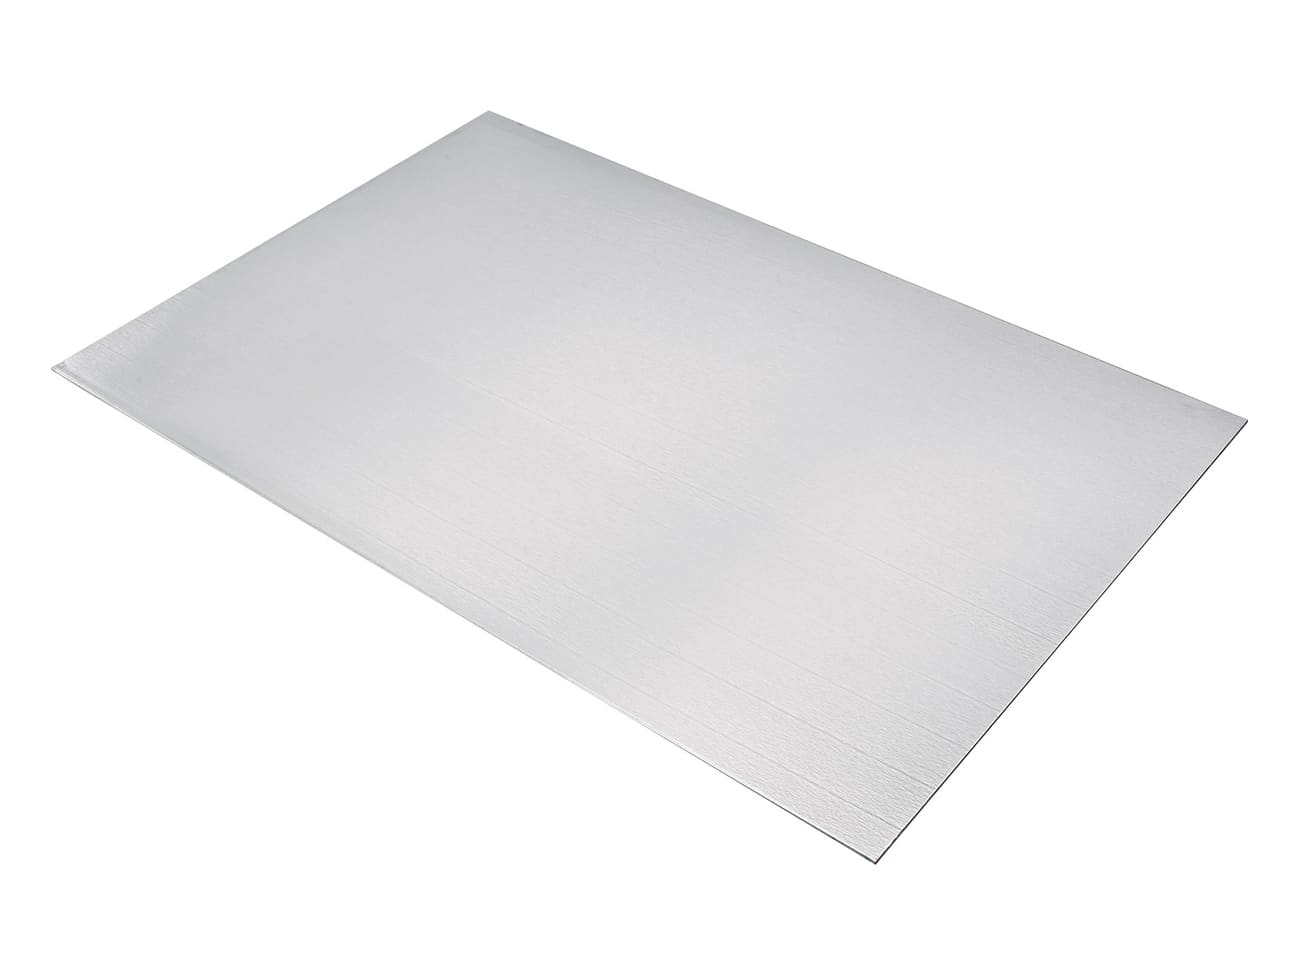 Plaque aluminium Épaisseur 3mm - 750 x 750 x 3 mm - Euro Makers